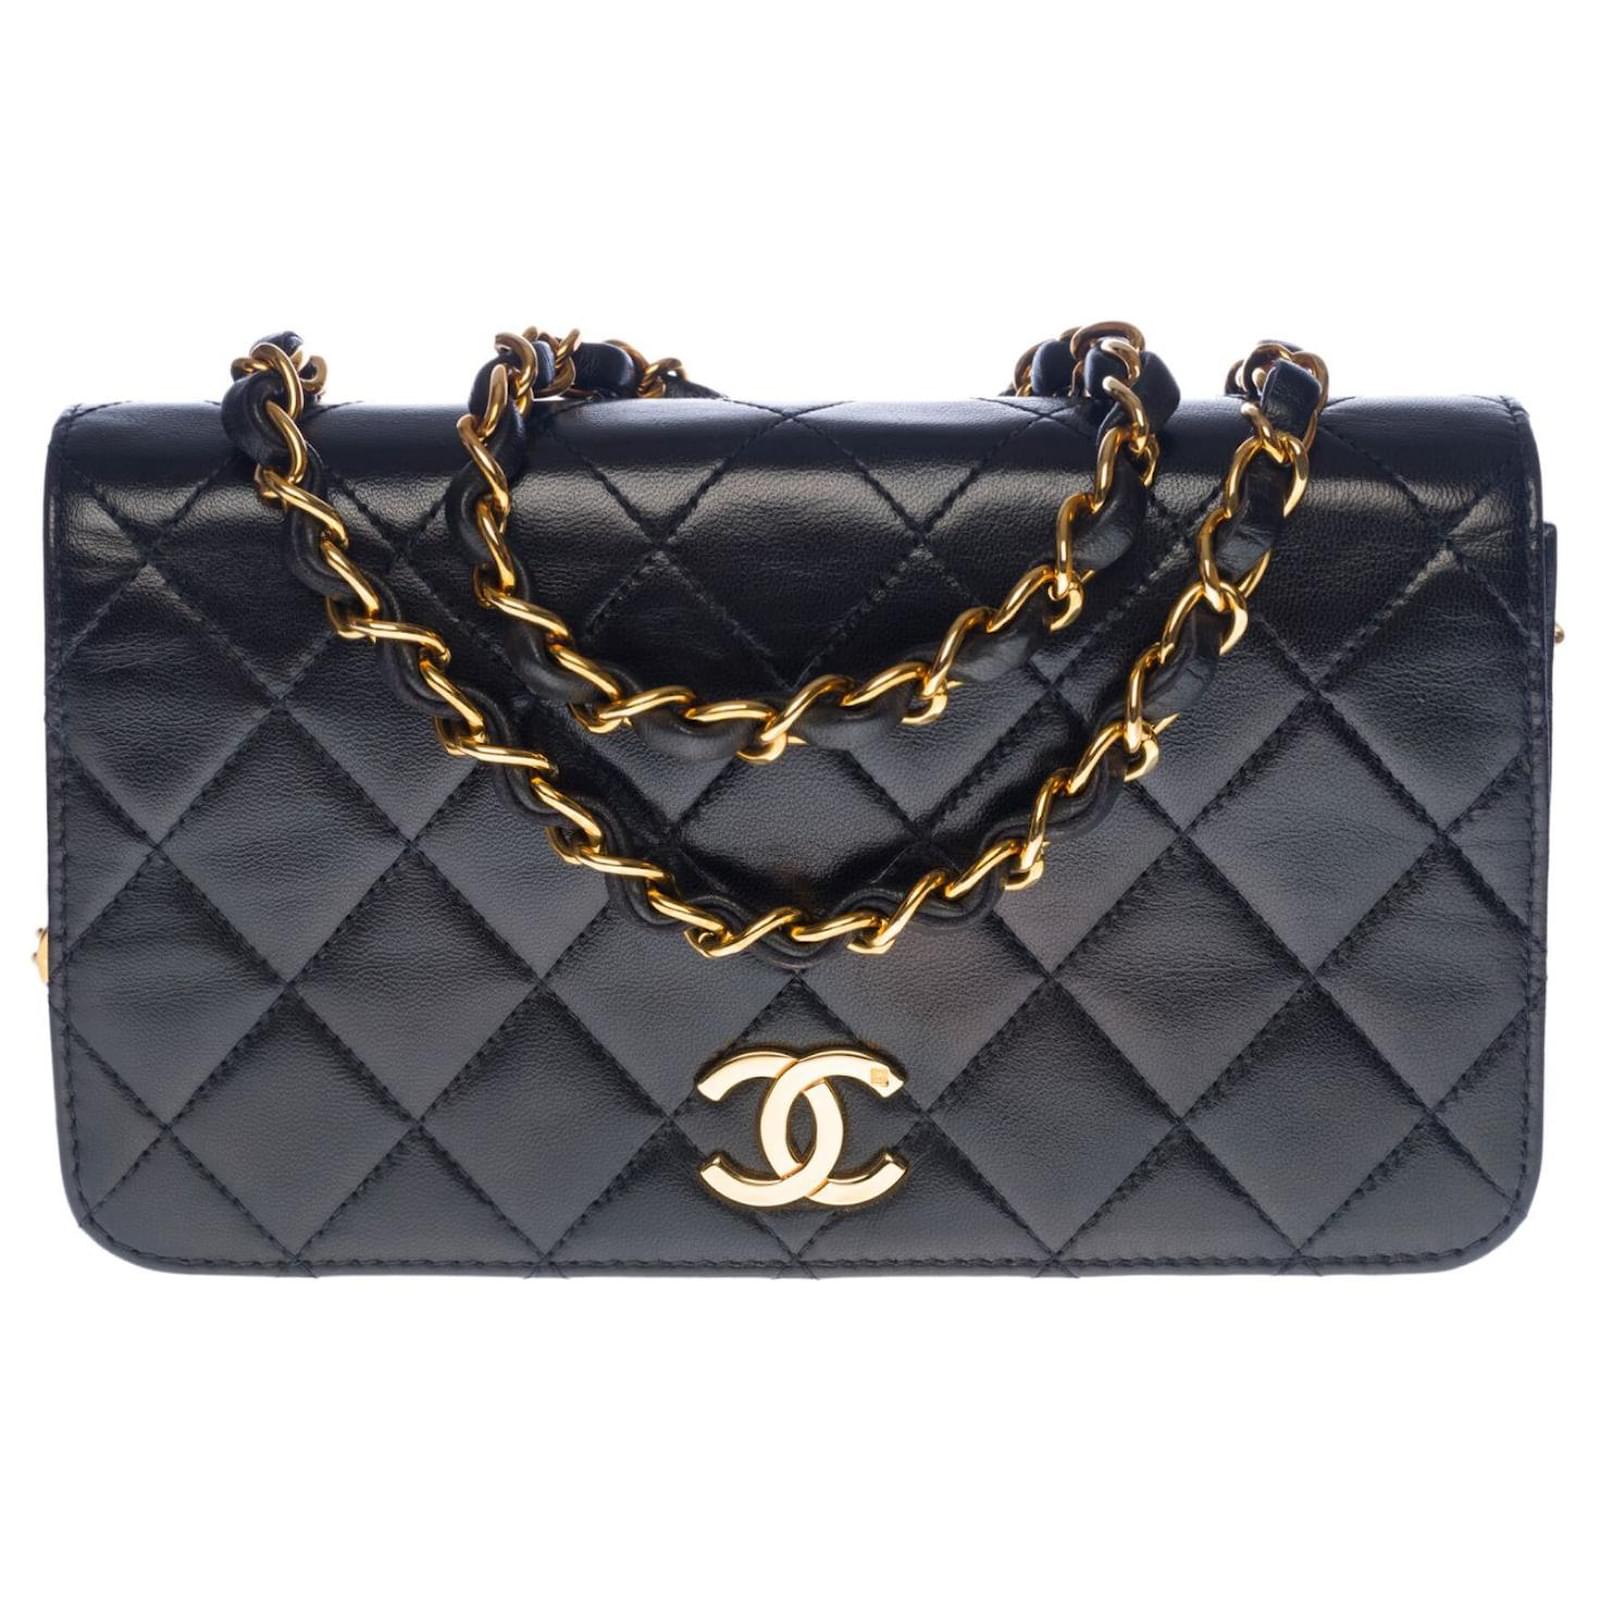 Timeless Lovely Chanel Full Flap Mini handbag in black quilted lambskin ...